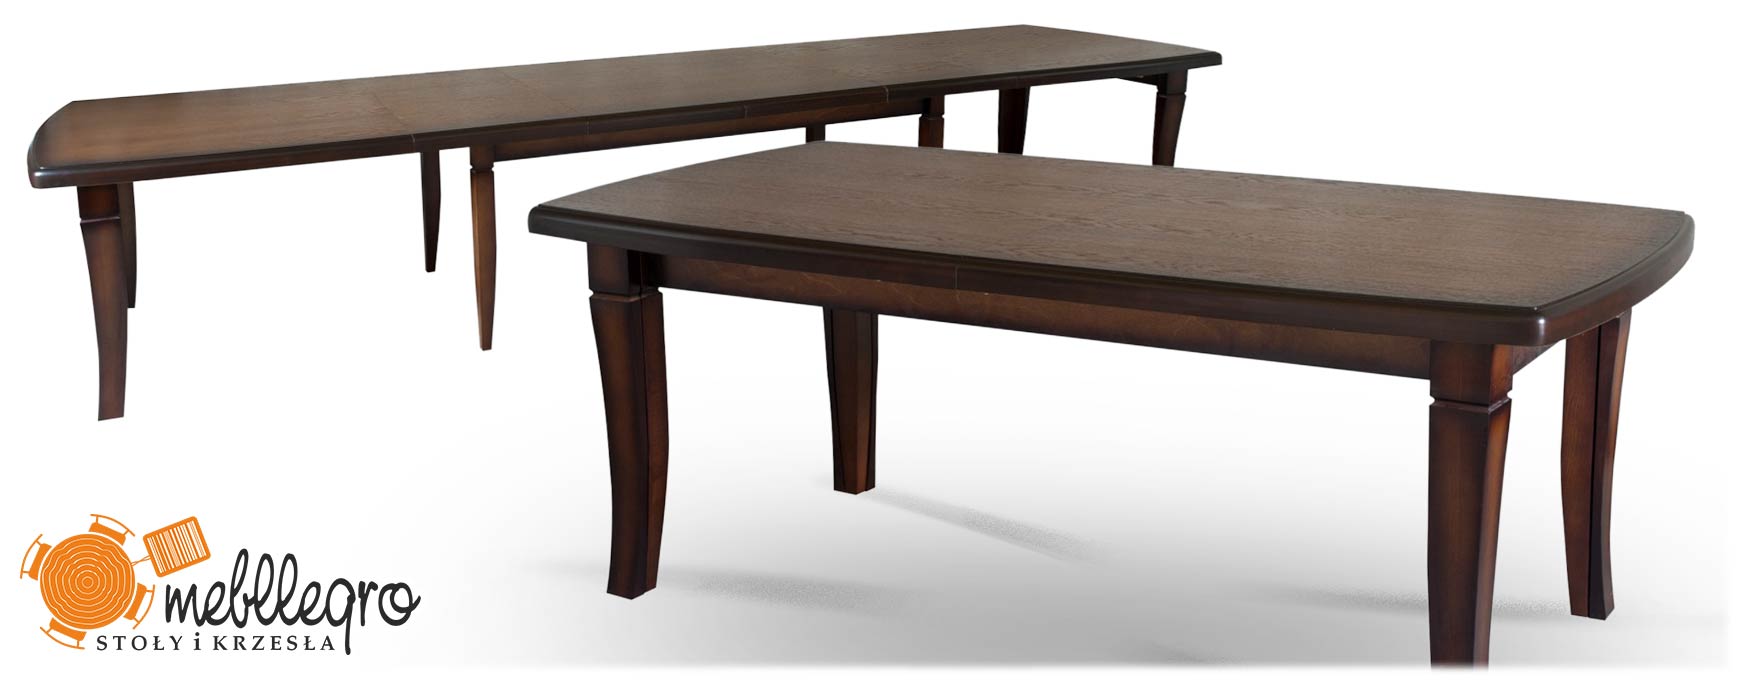 Stół S12 rozkładany drewniany 8 nóg